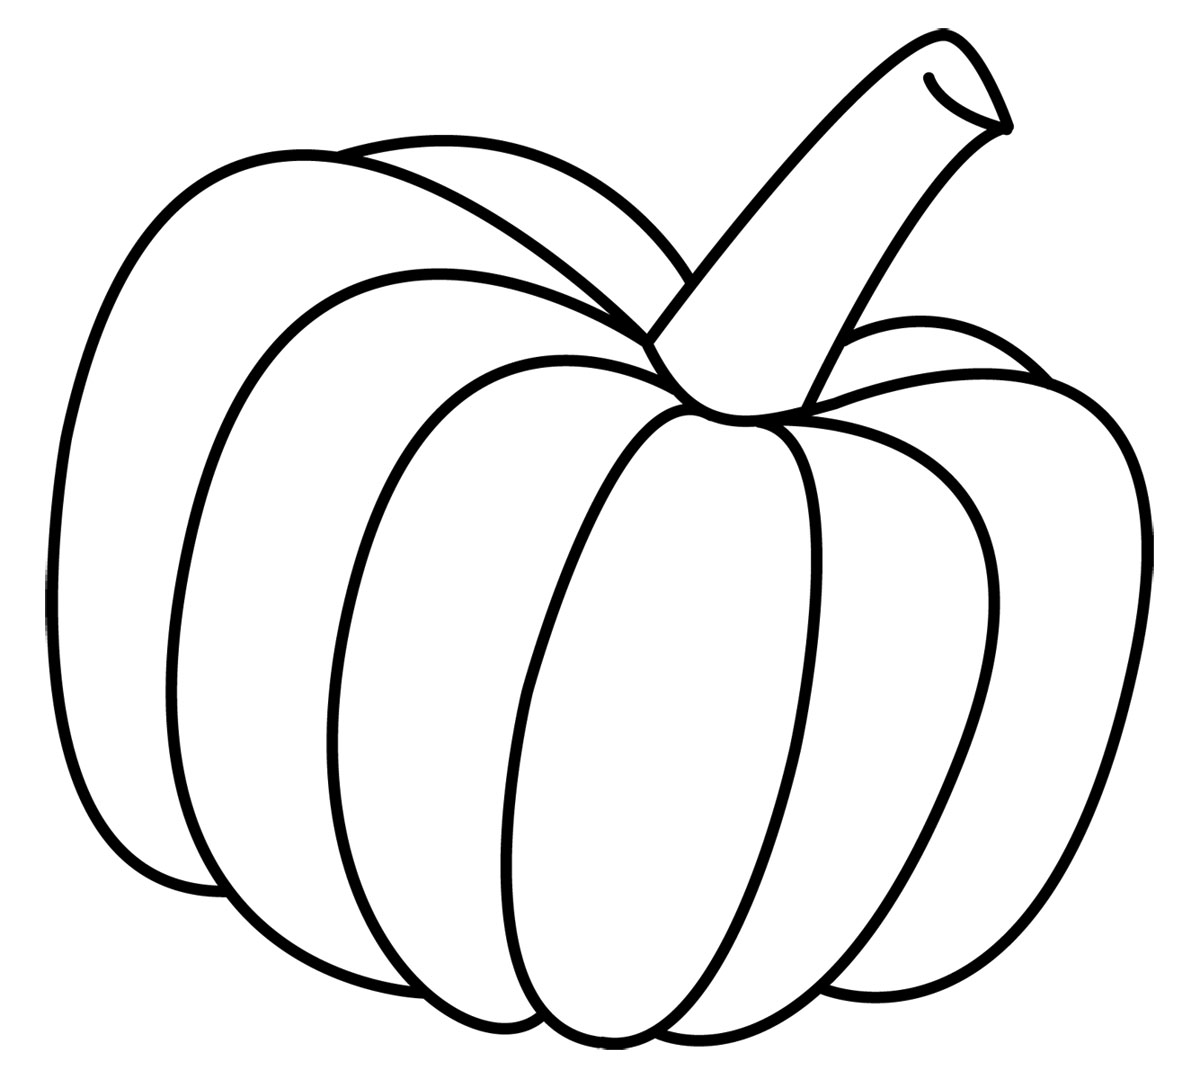 Fall Pumpkin Clip Art - ClipArt Best